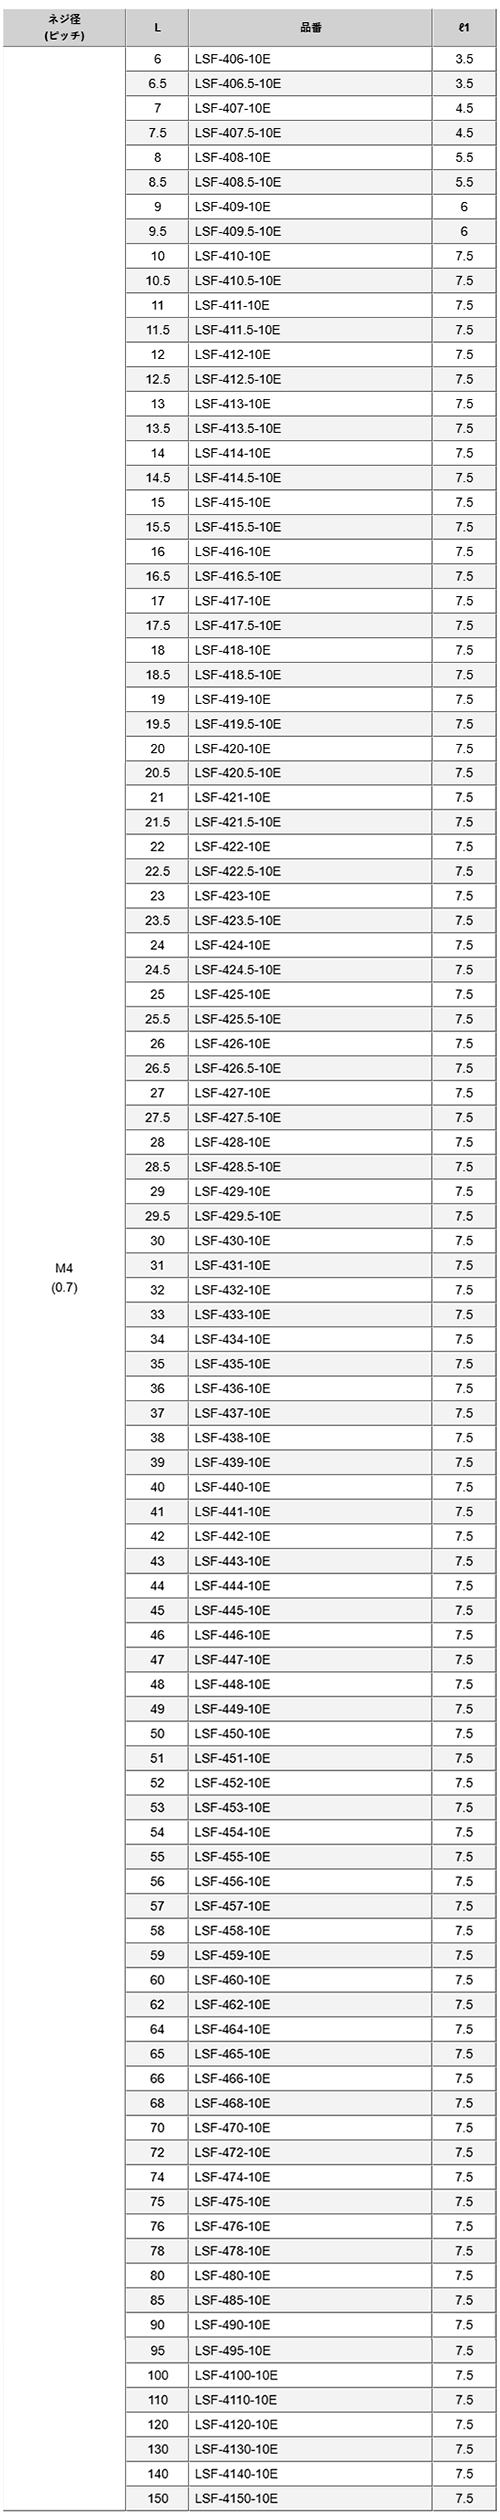 鉄(ROHS2対応) 六角スペーサー(オネジ10mmロング+メスねじ) LSF-4●●-10E(M4)の寸法表